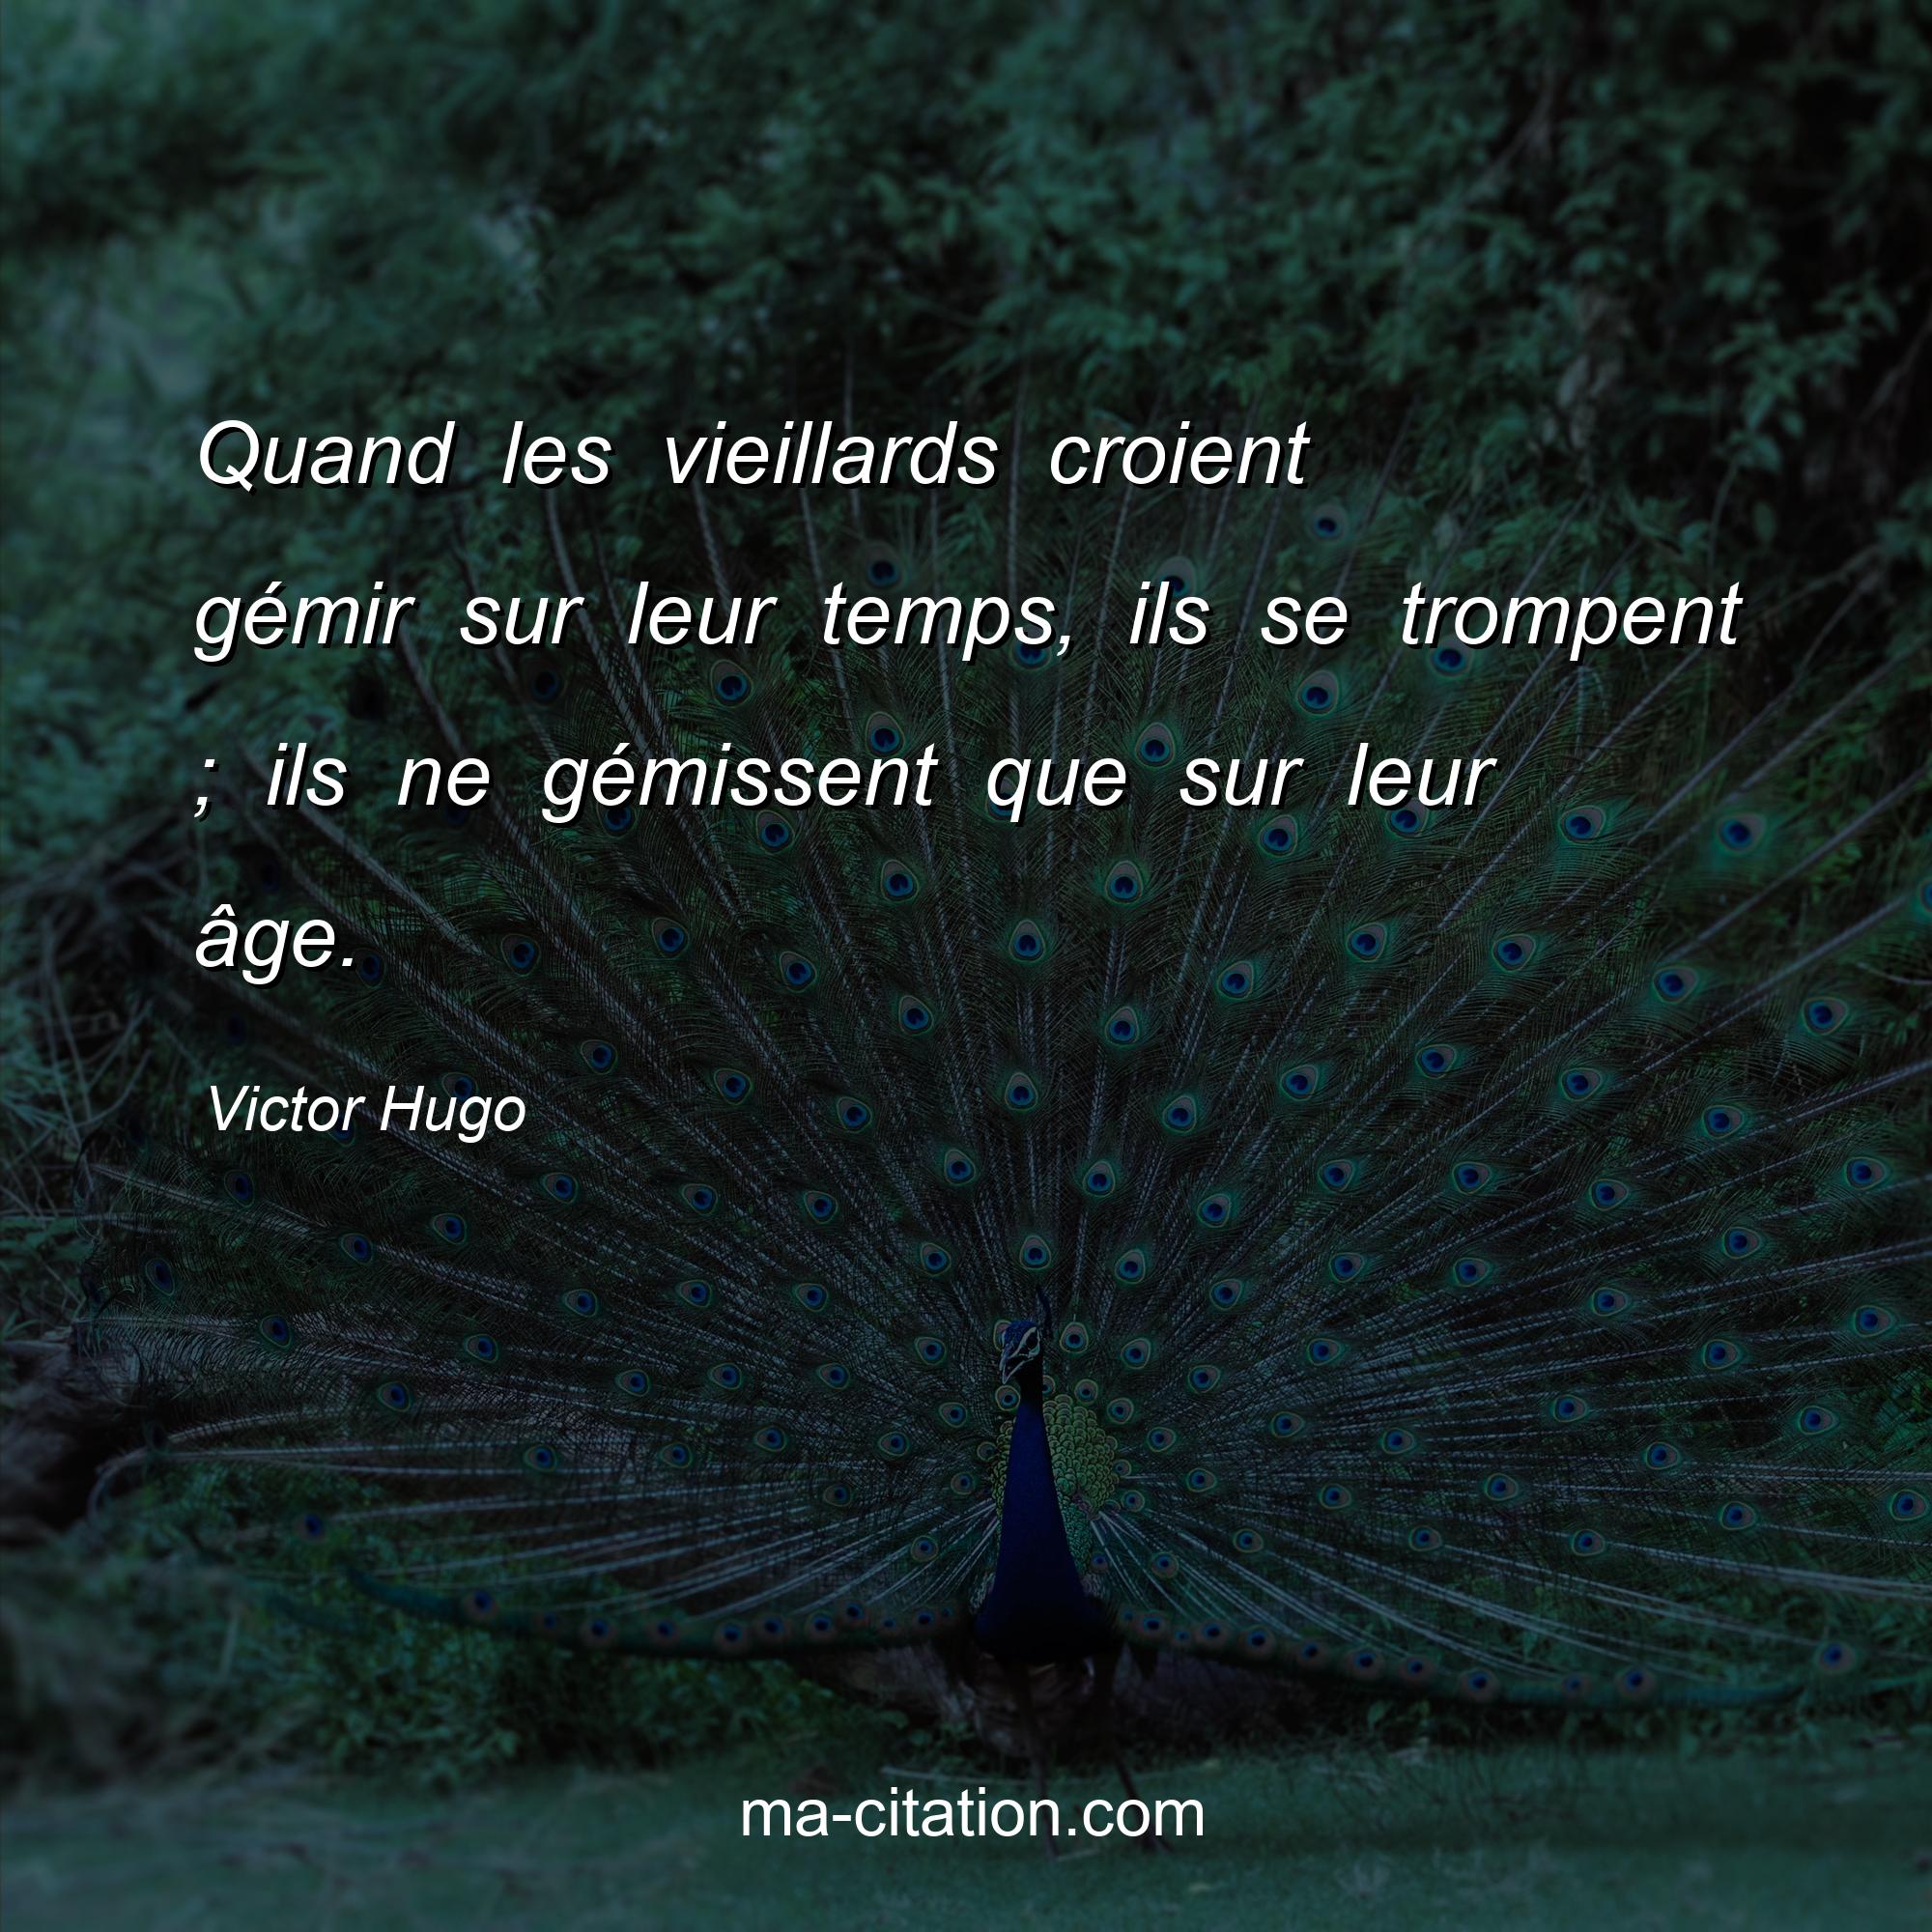 Victor Hugo : Quand les vieillards croient gémir sur leur temps, ils se trompent ; ils ne gémissent que sur leur âge.